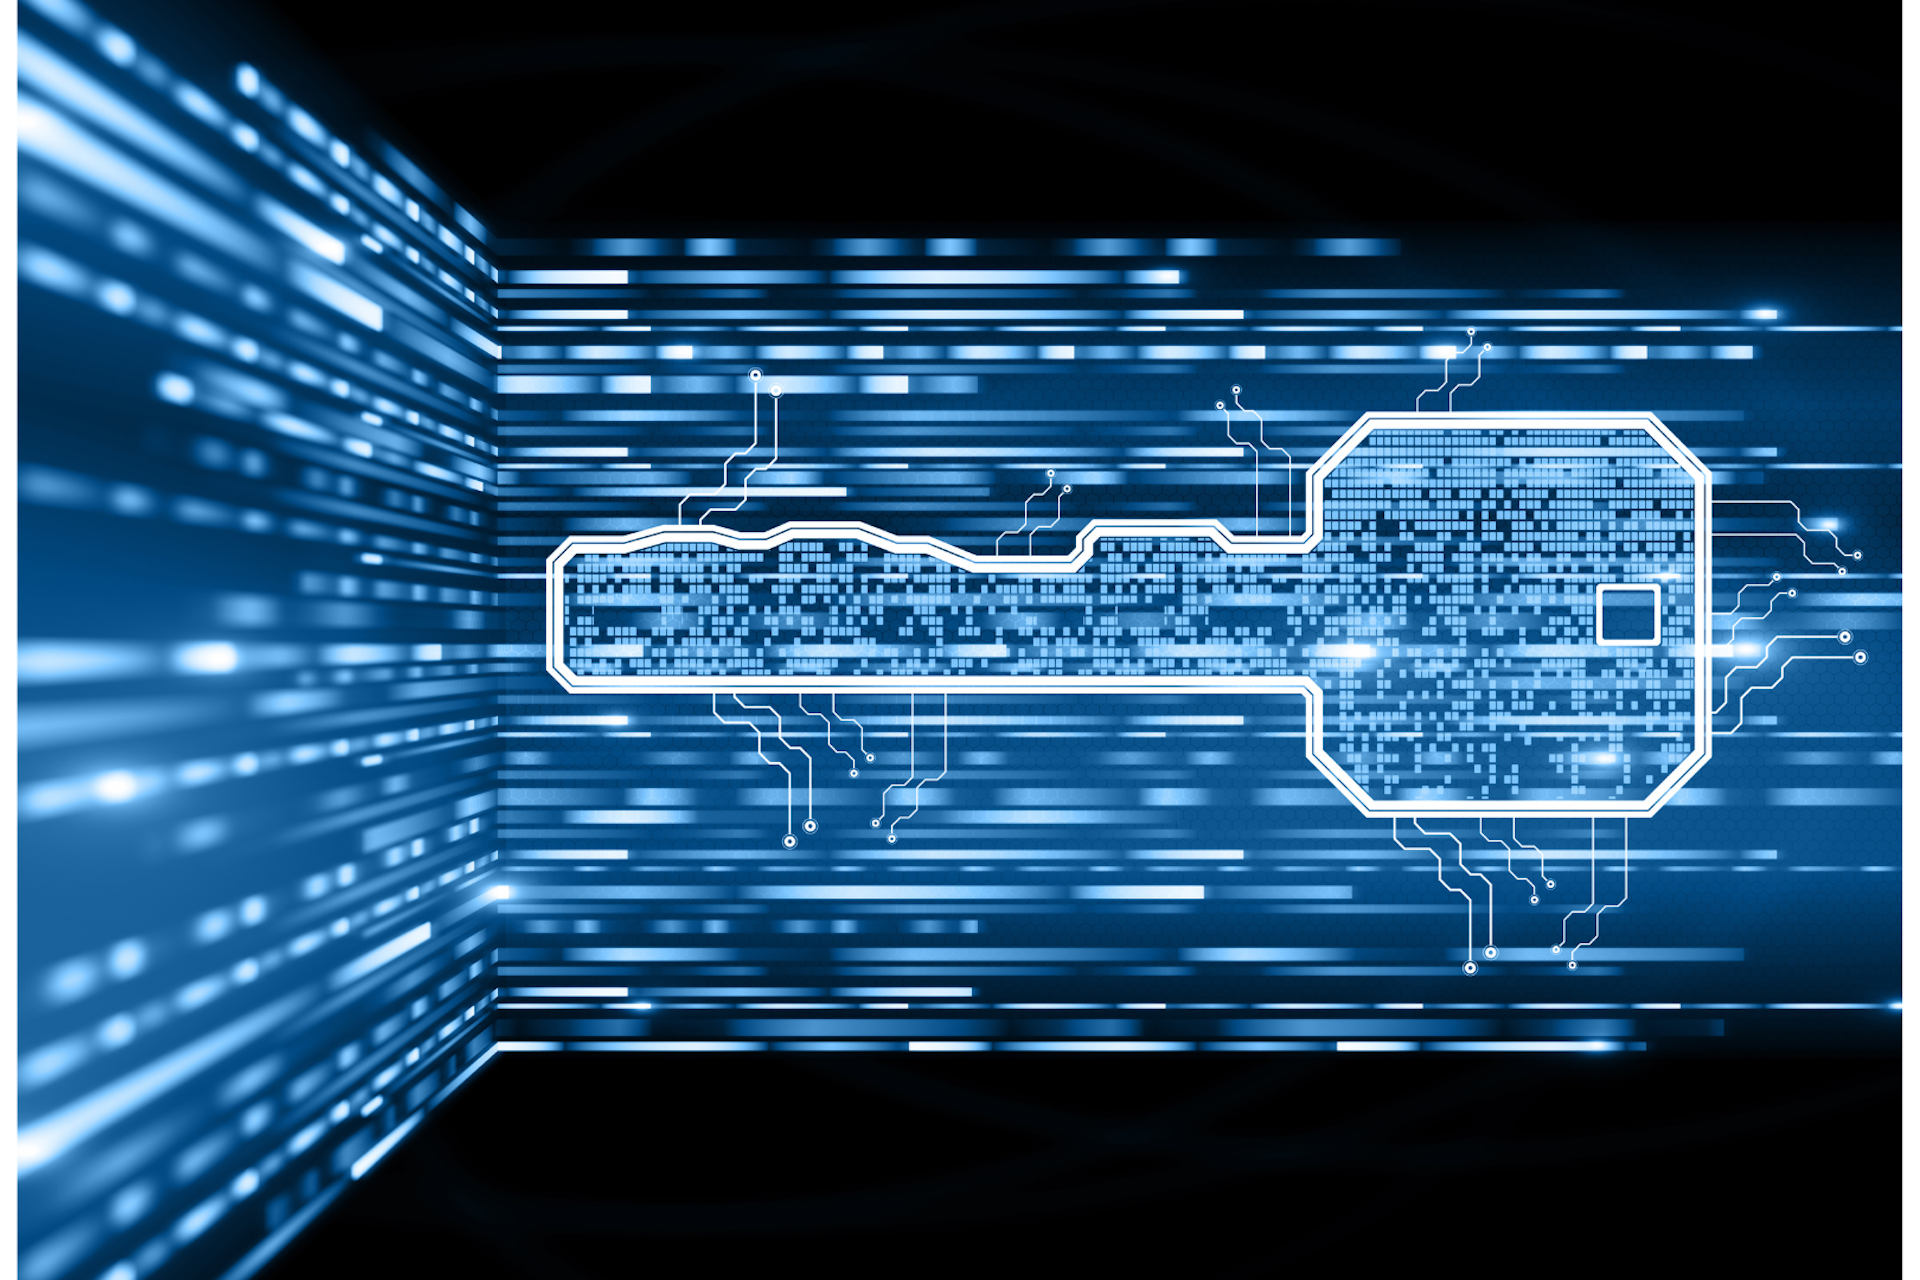 Une clef digitale bleu sur un circuit électrique de données.